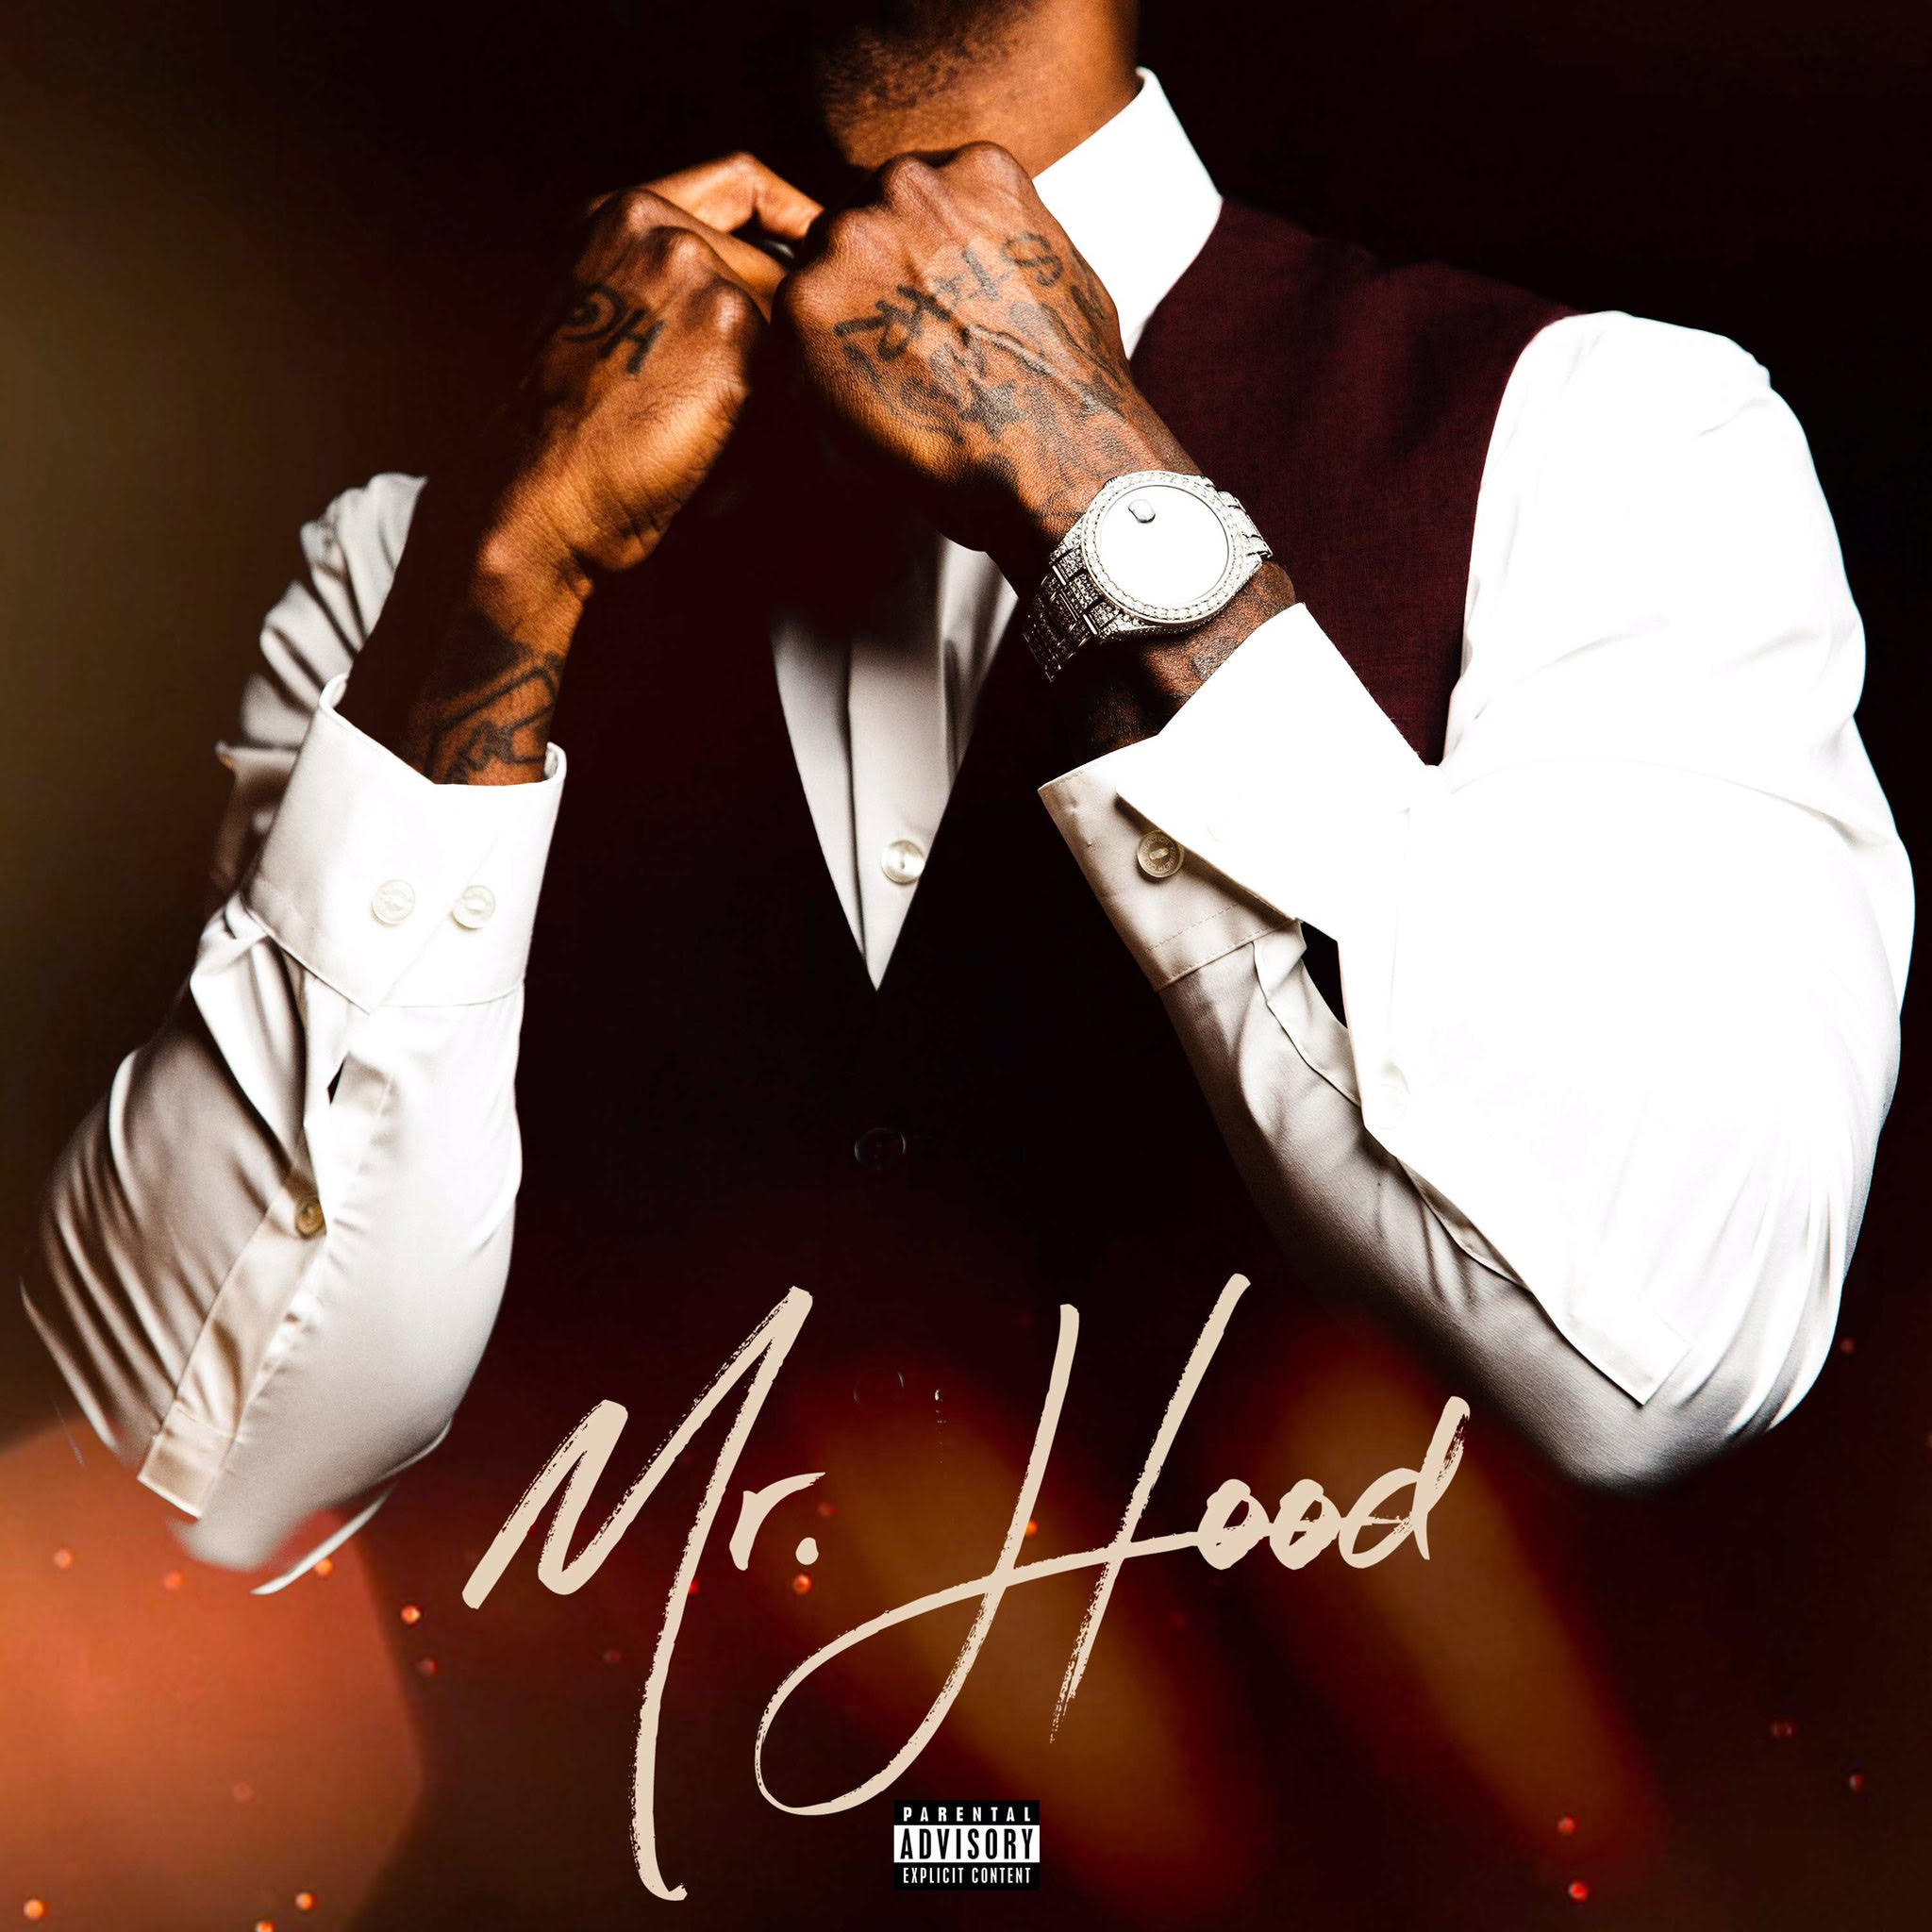 Ace Hood – “Mr. Hood” [Album]